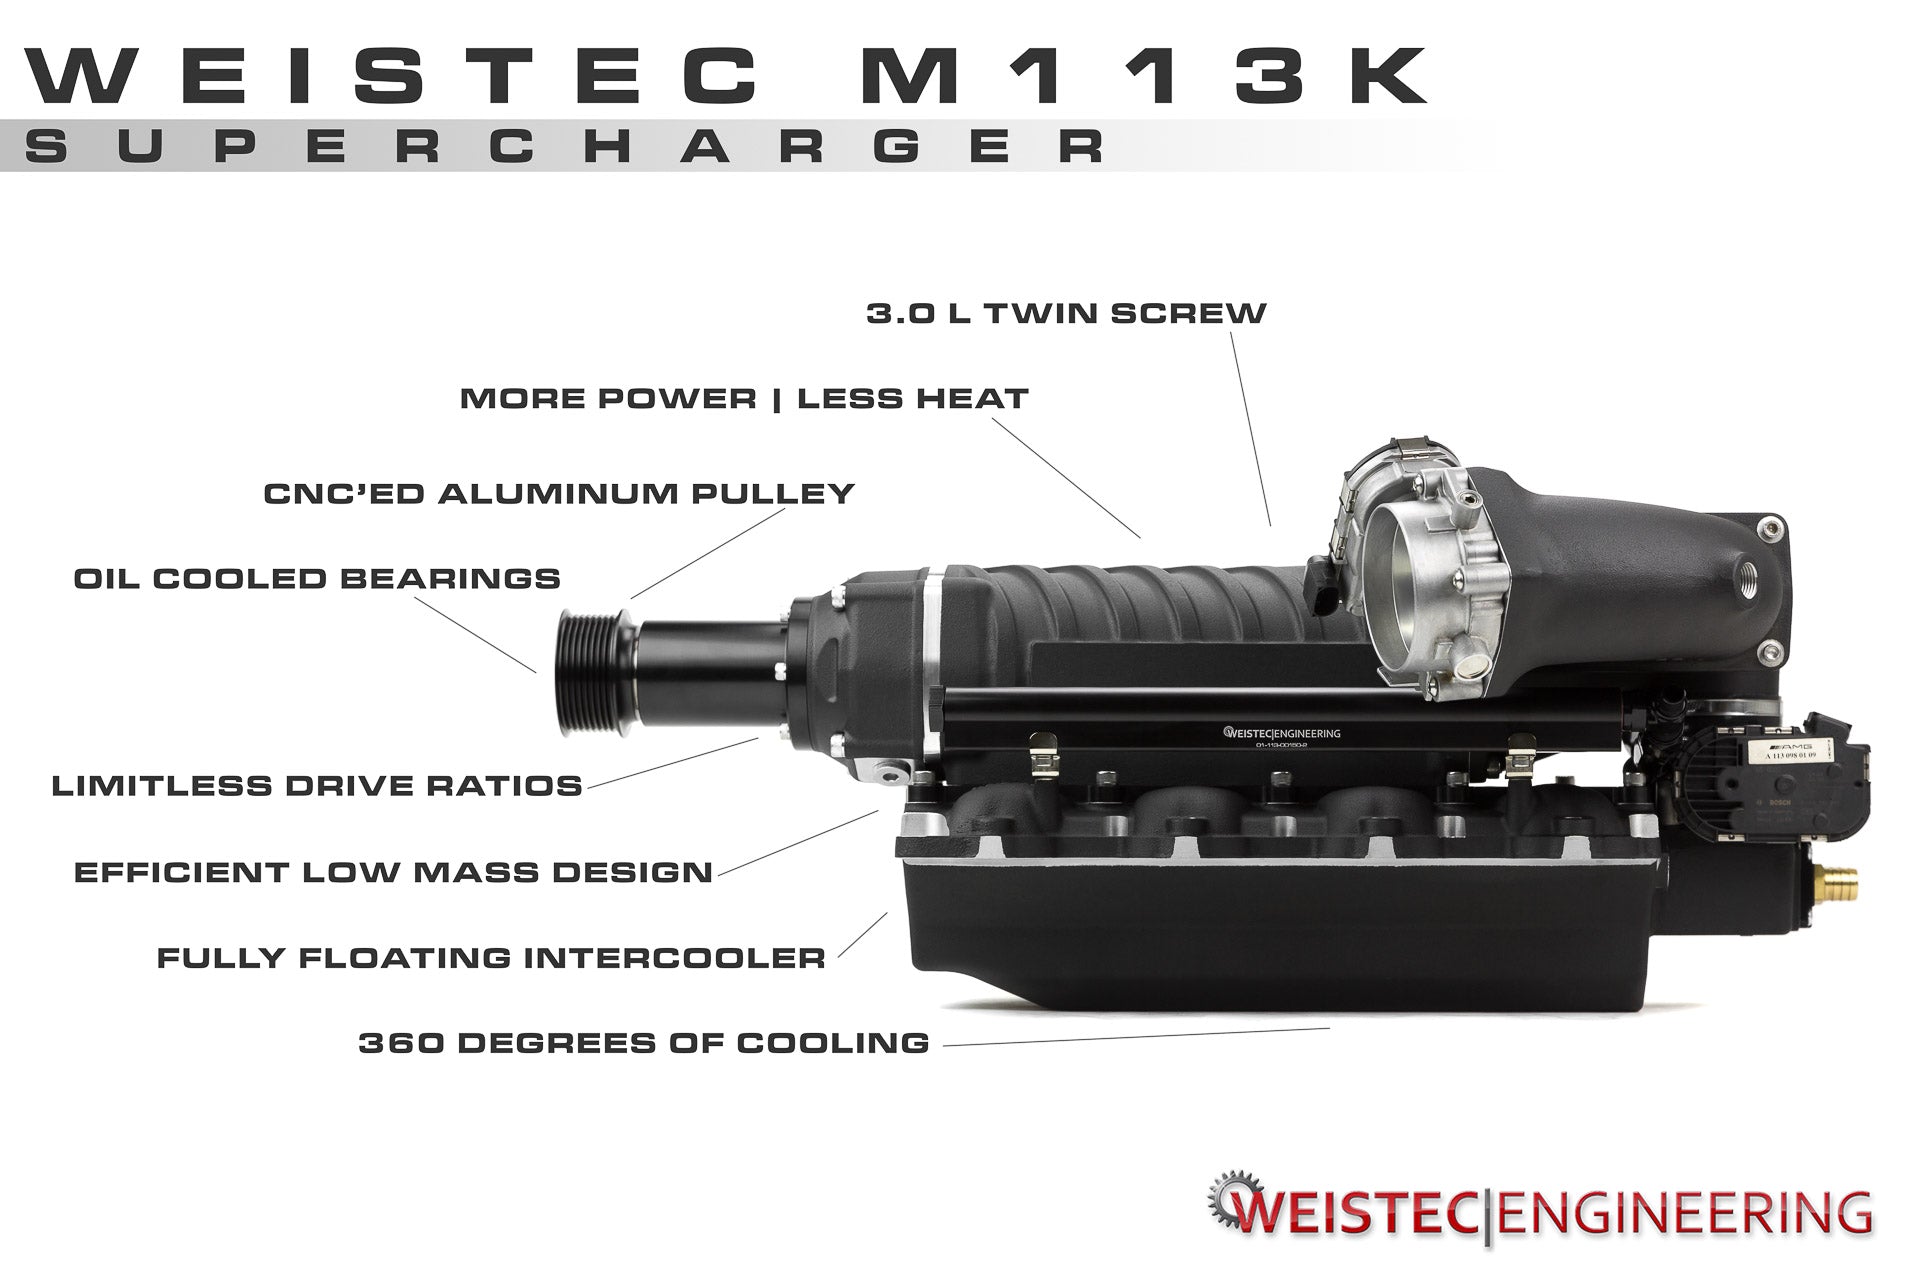 M113K Supercharger System, SL55